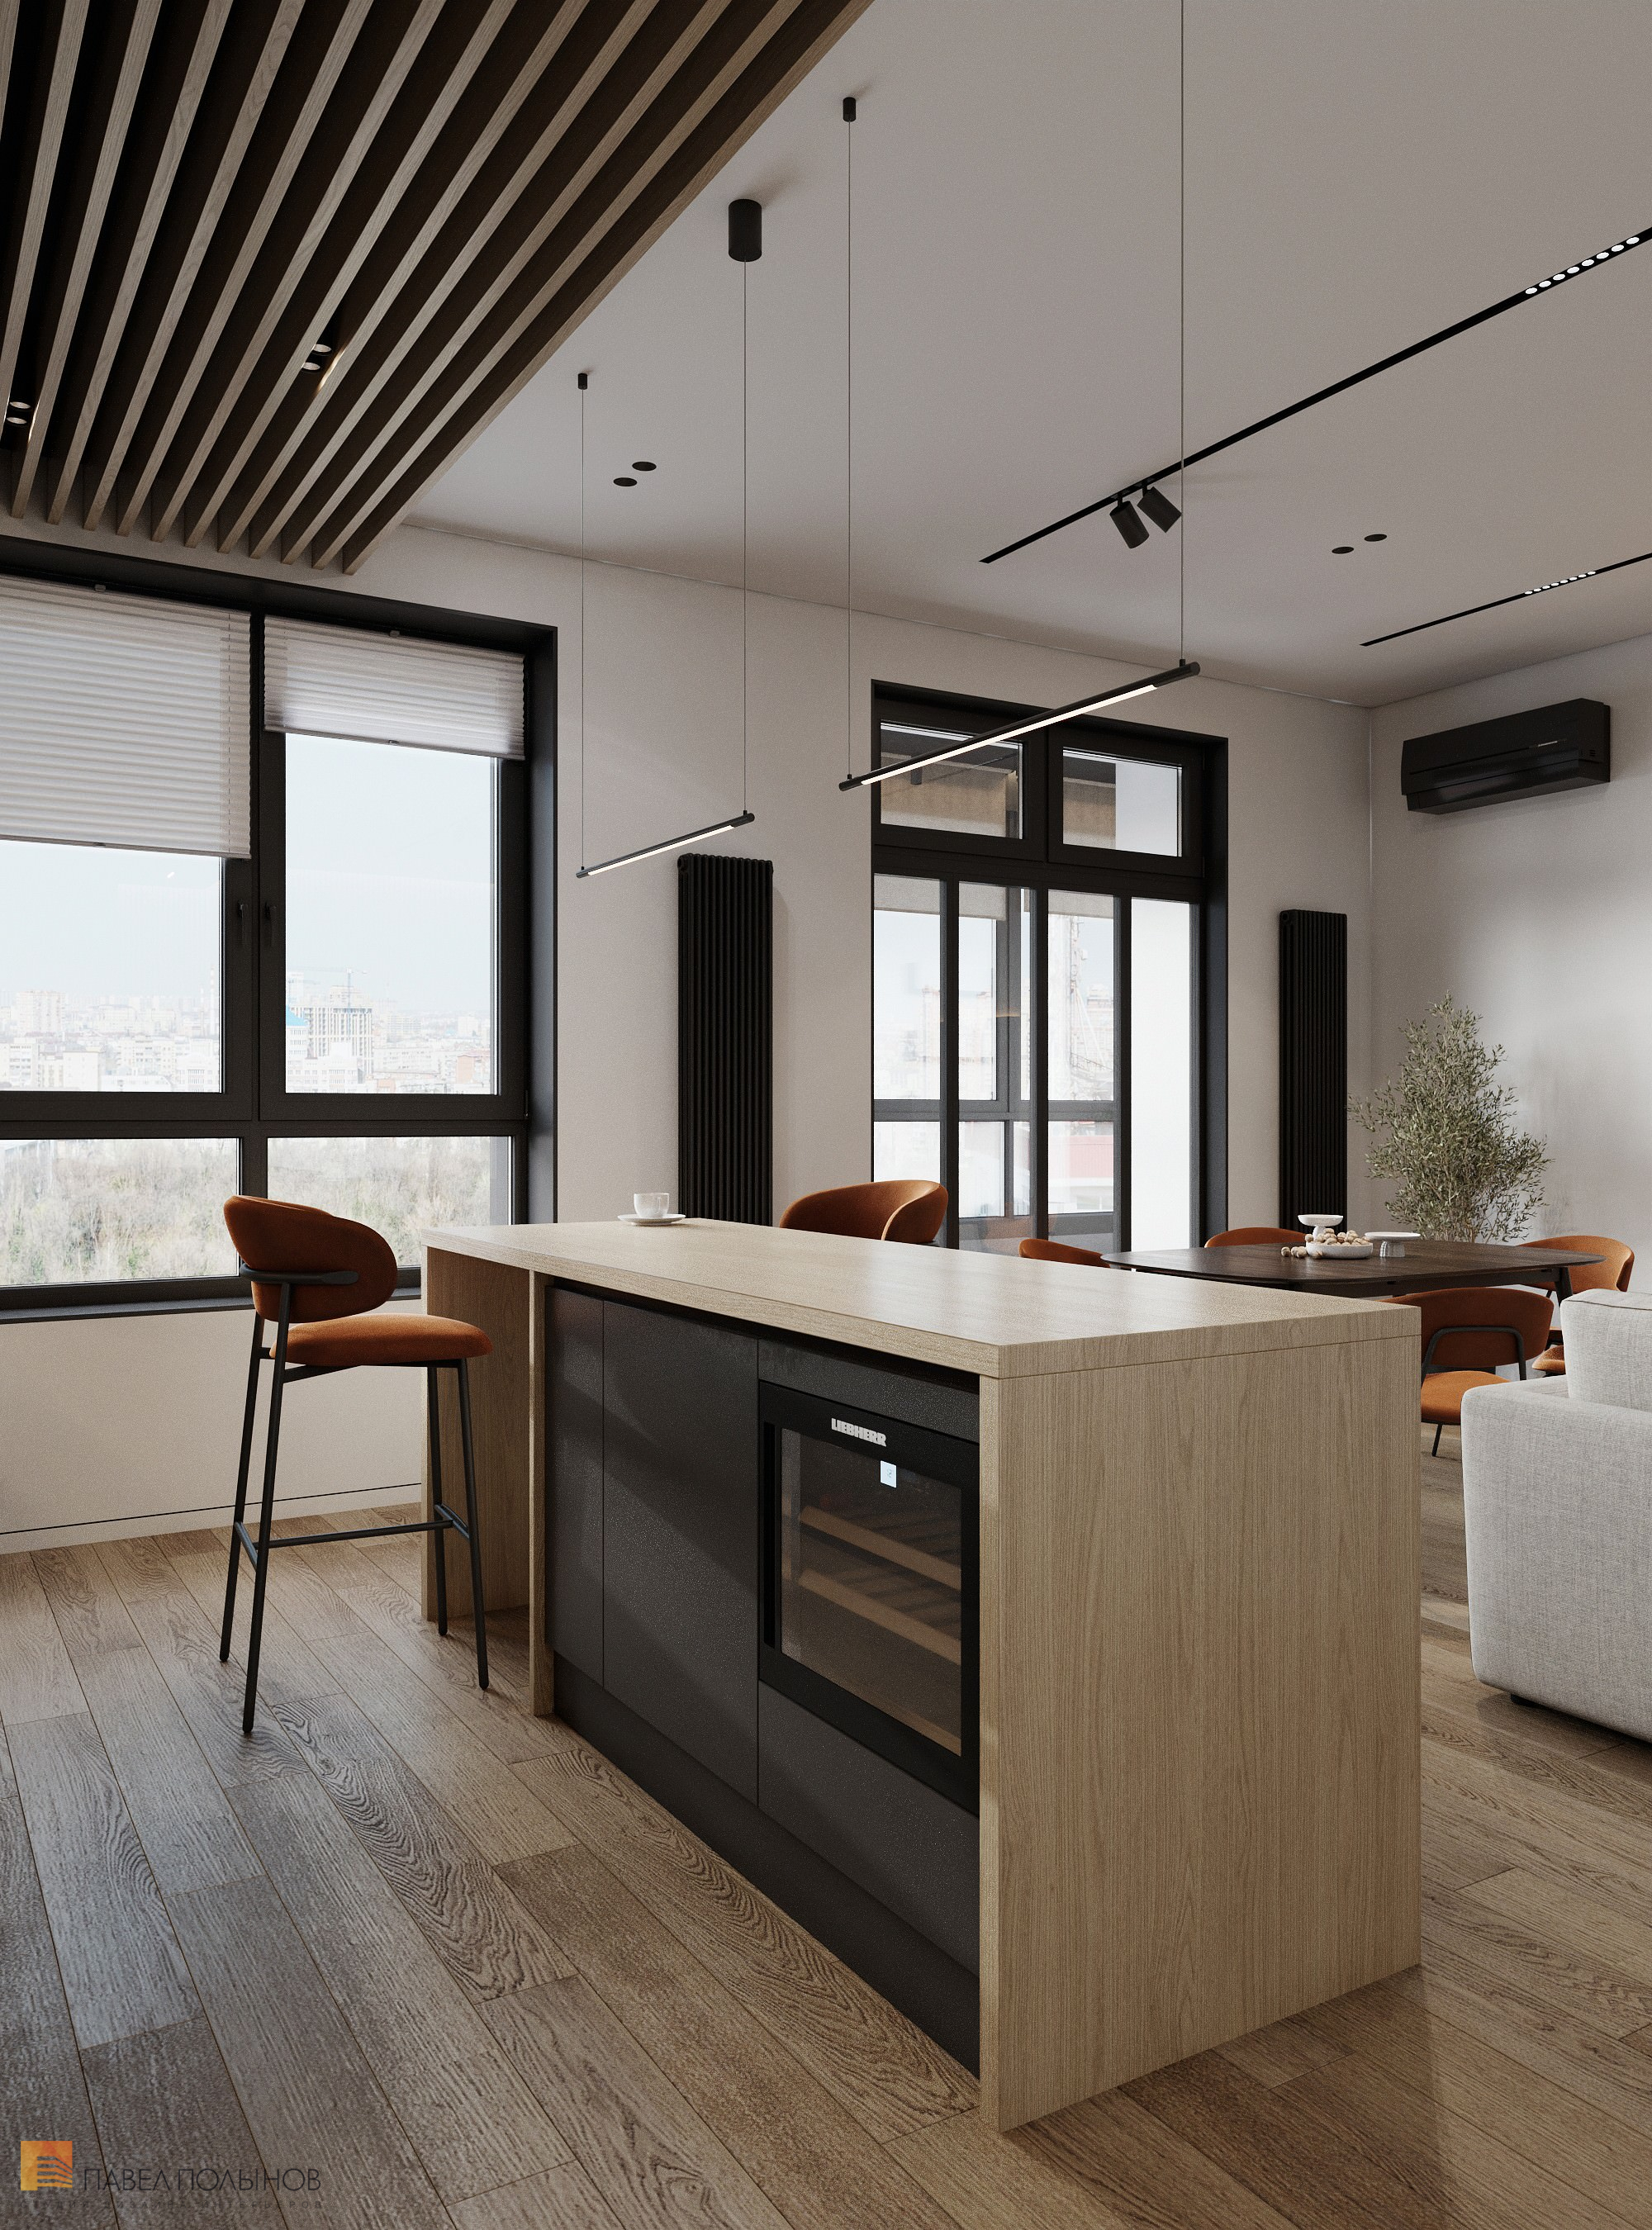 Фото дизайн интерьера кухни из проекта «Дизайн интерьера квартиры в современном стиле, ЖК «Сердце столицы», 98 кв.м.»